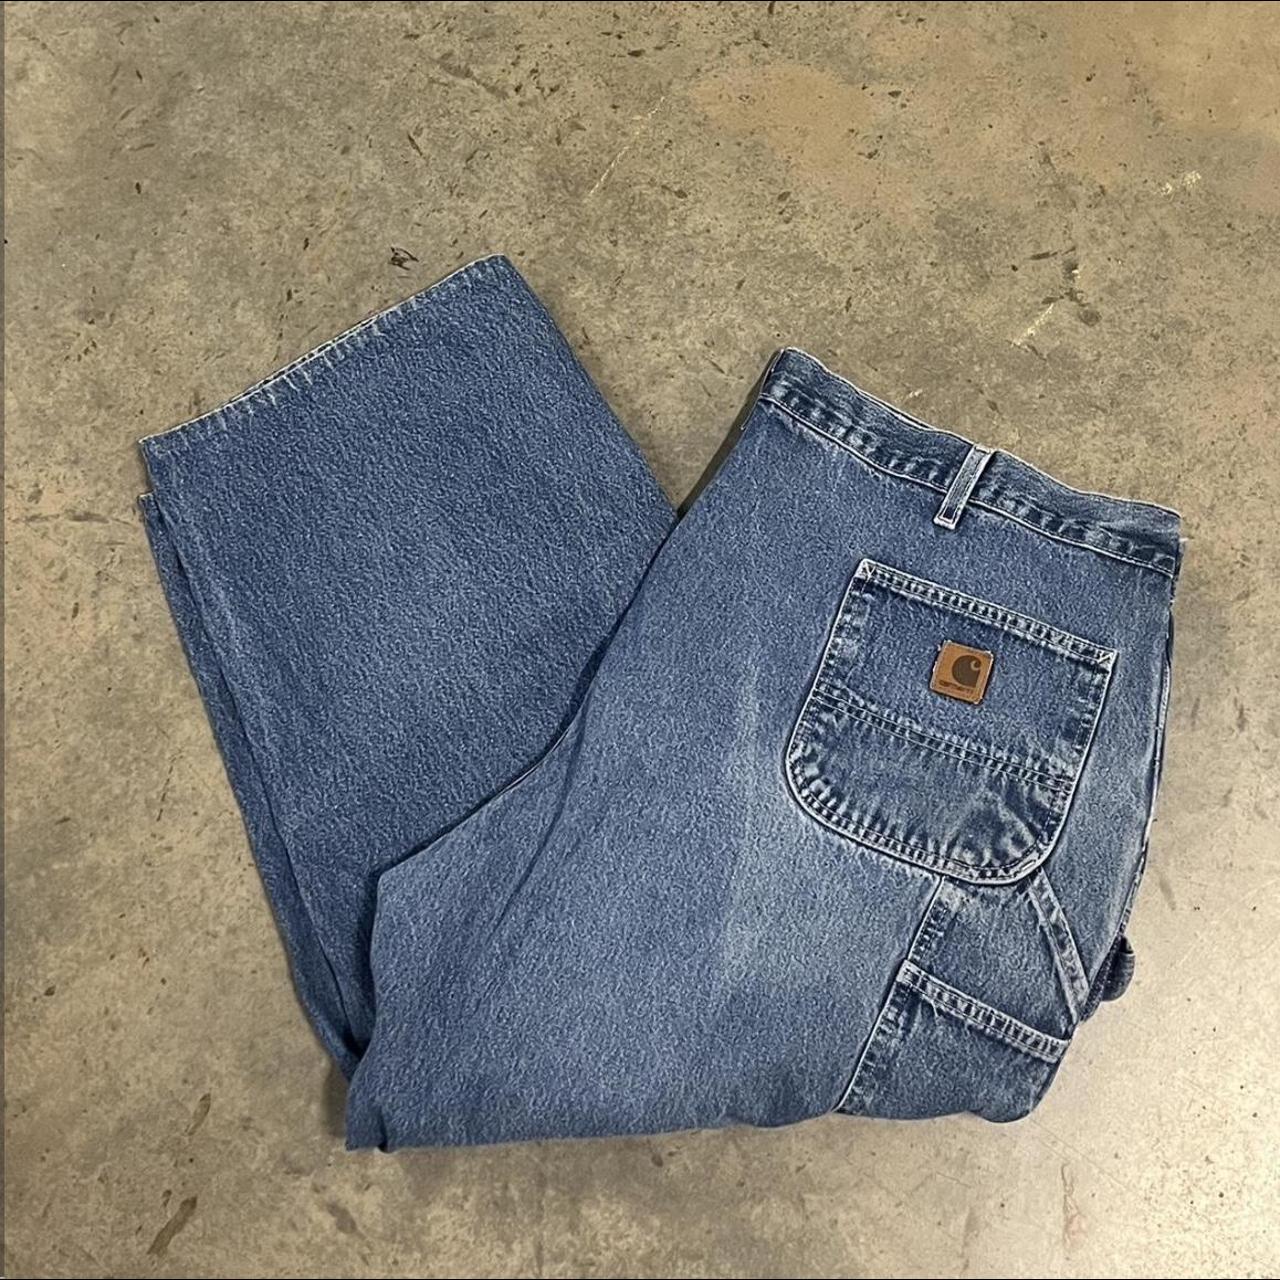 Vintage Carhartt Jeans Men's 44x30 Denim Light Wash... - Depop